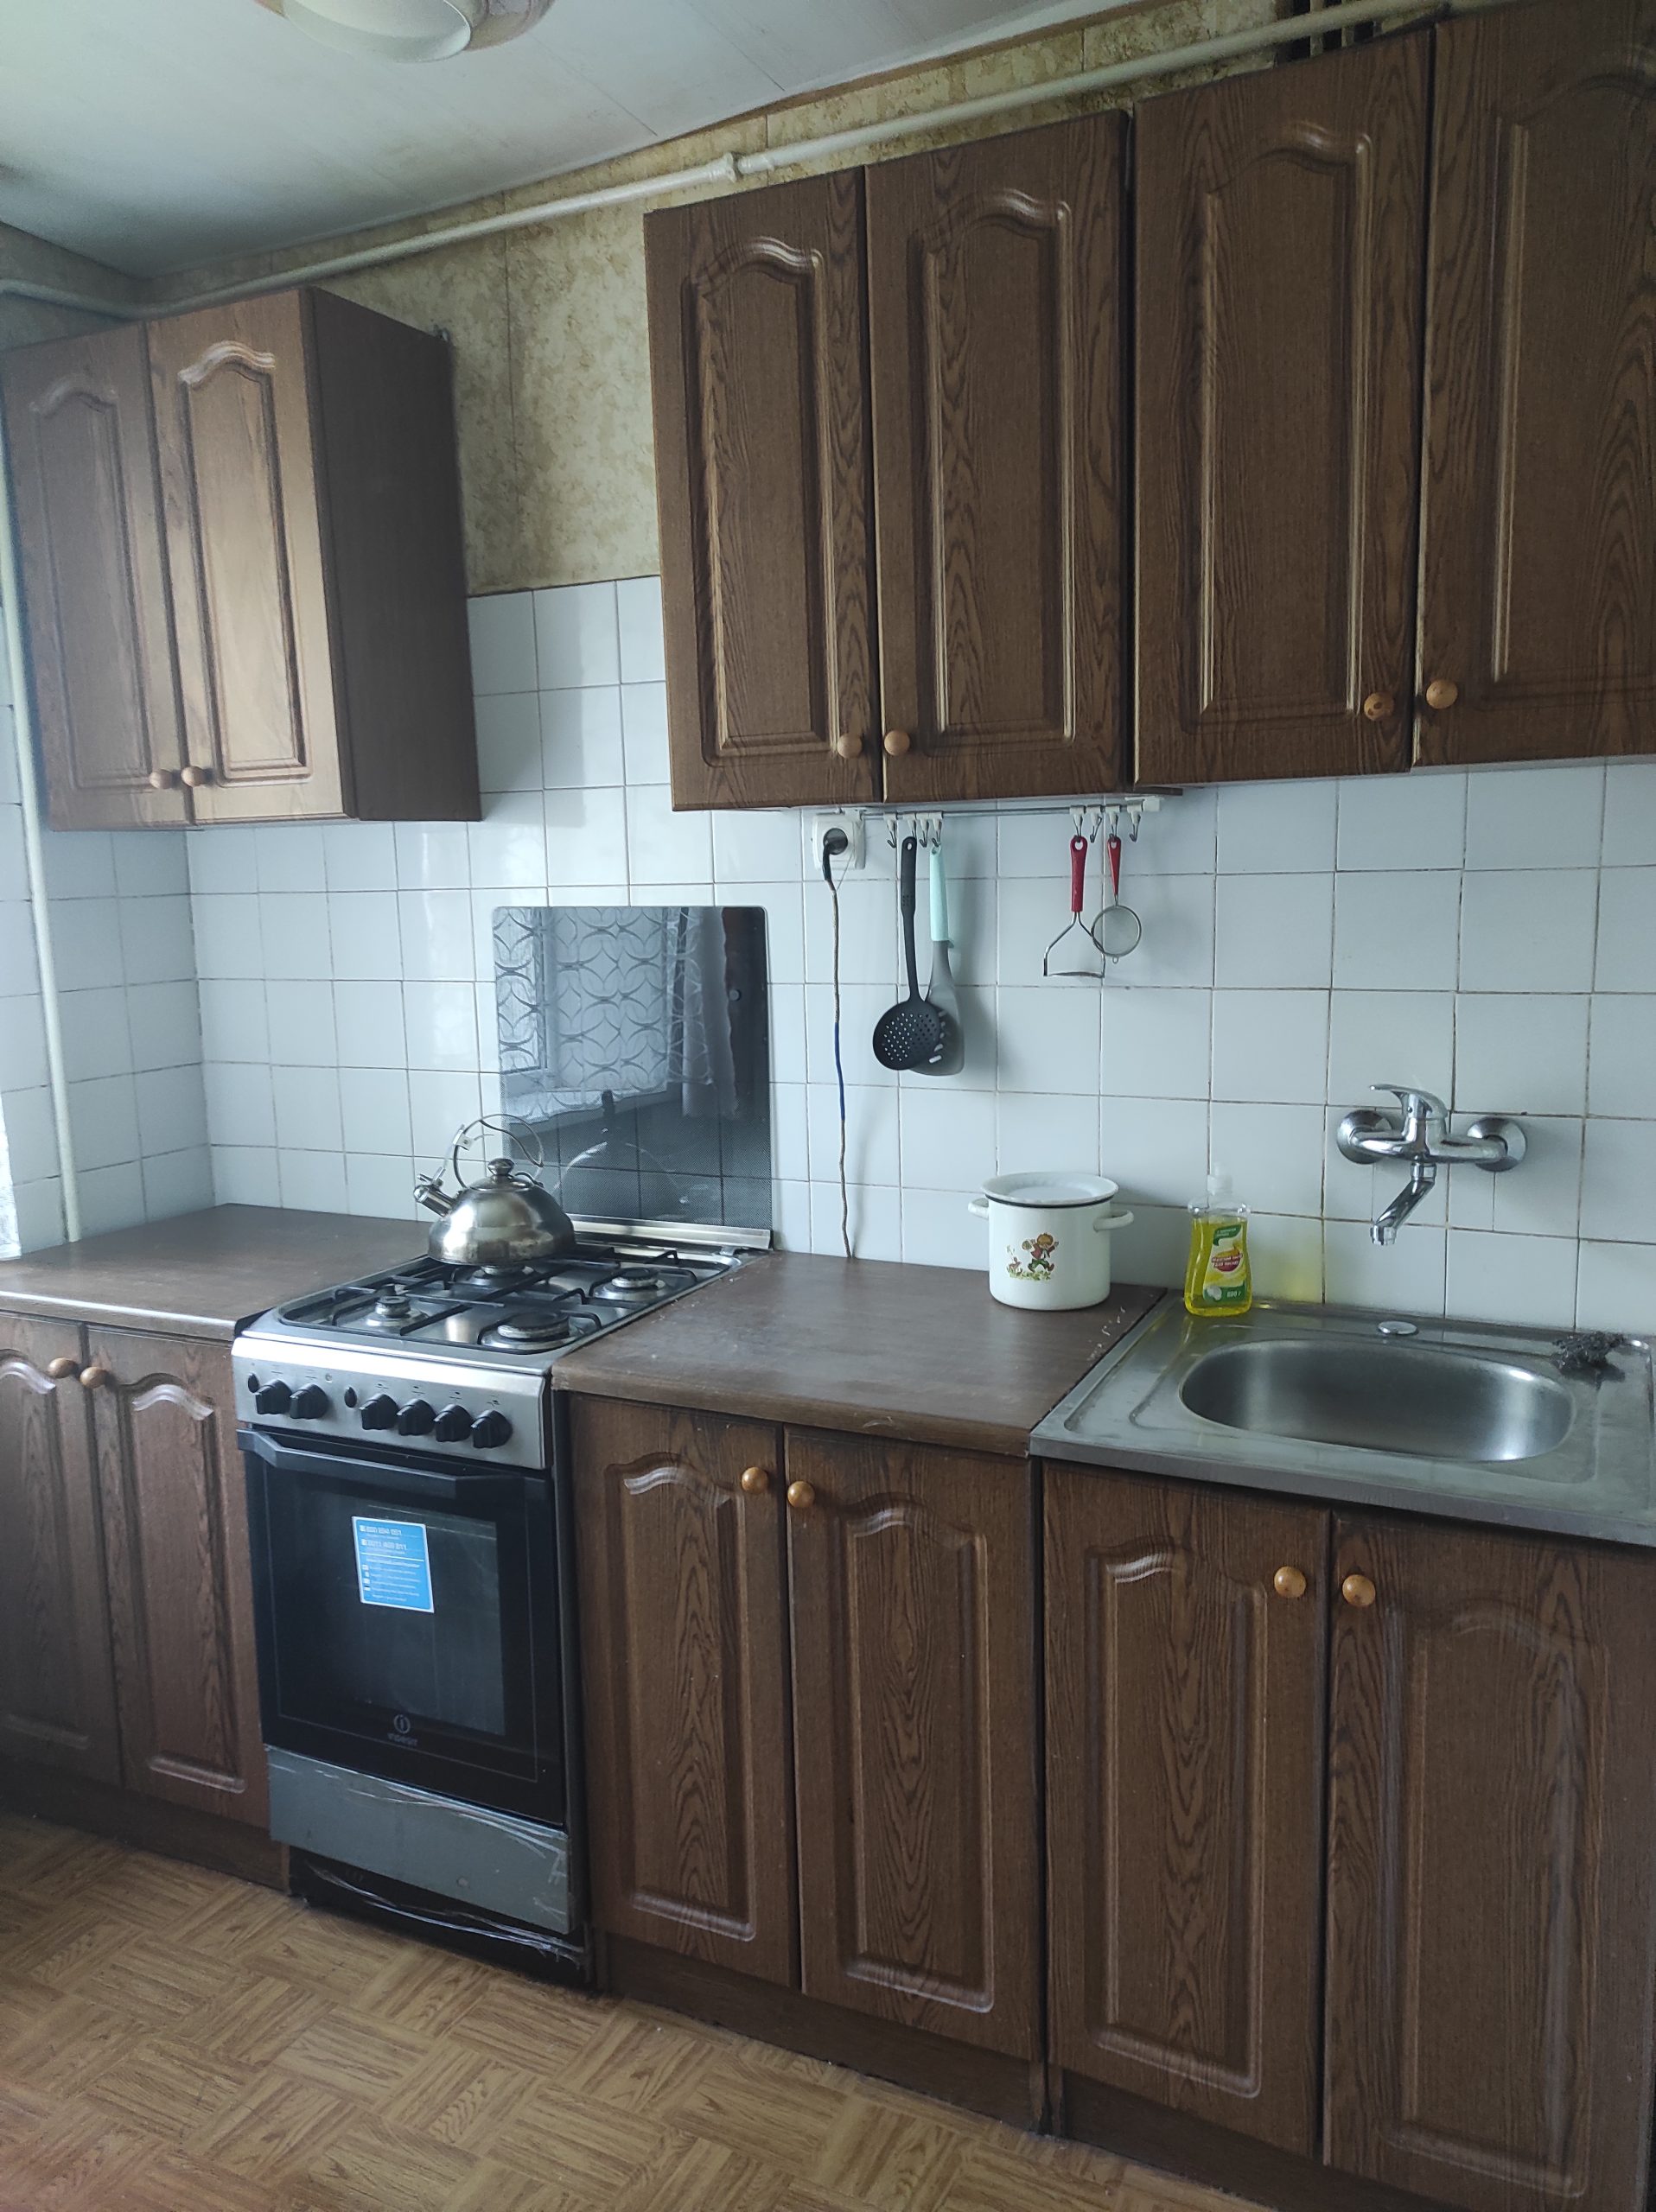 Продам двухкомнатную квартиру напротив парка Горького, о которой мечтает любая молодая семья